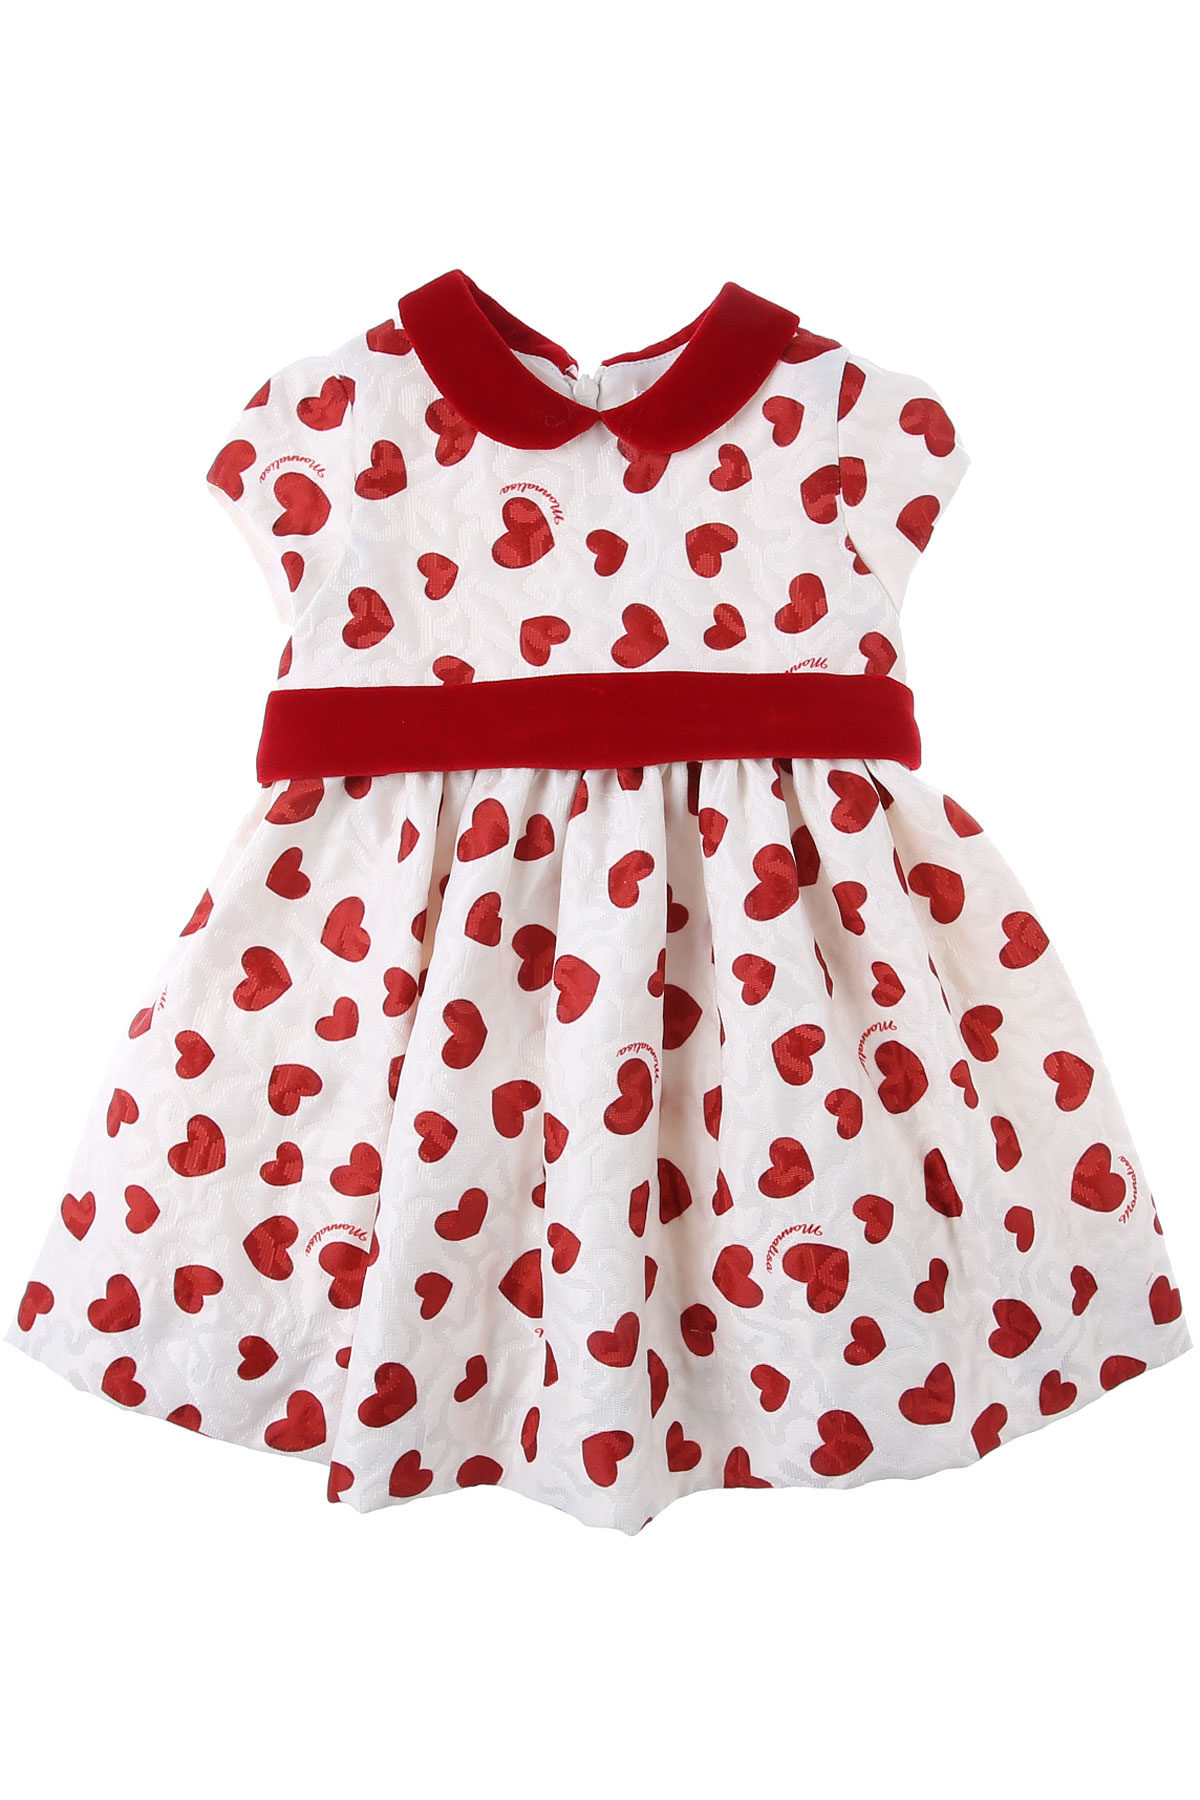 Monnalisa Baby Kleid für Mädchen Günstig im Sale, Creme, Polyester, 2017, 12M 18M 2Y 6M 9M